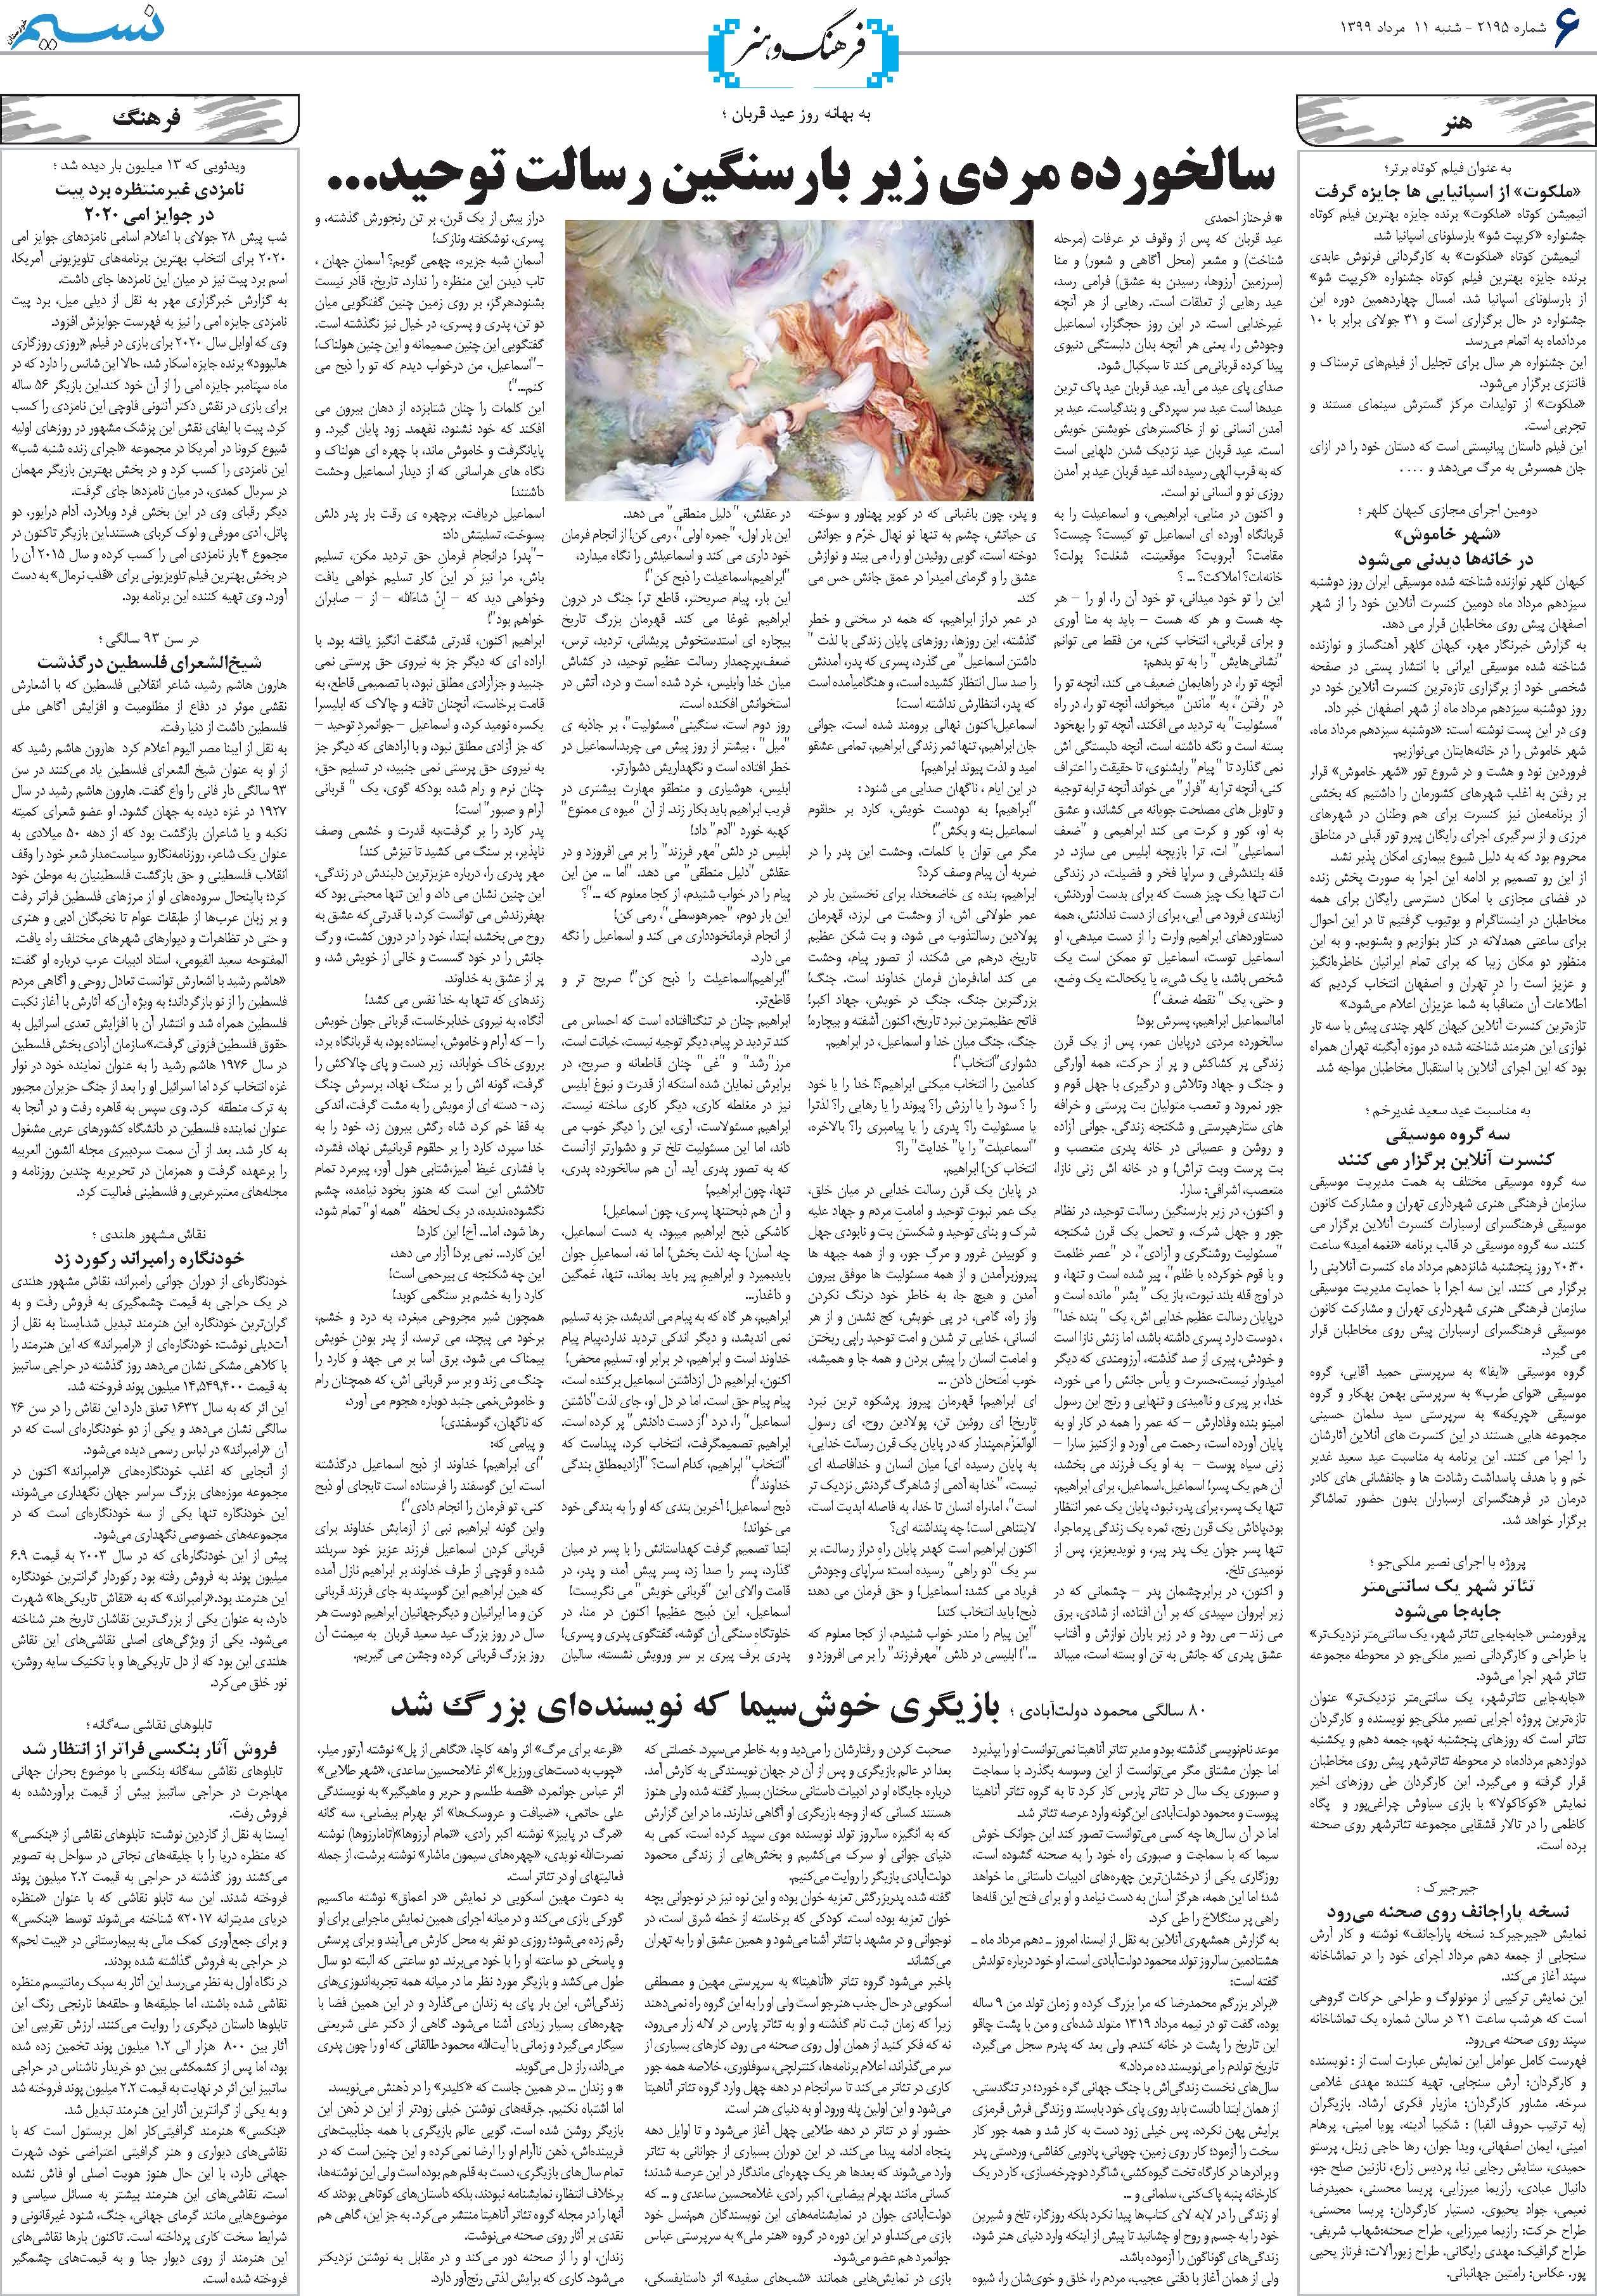 صفحه فرهنگ و هنر روزنامه نسیم شماره 2195